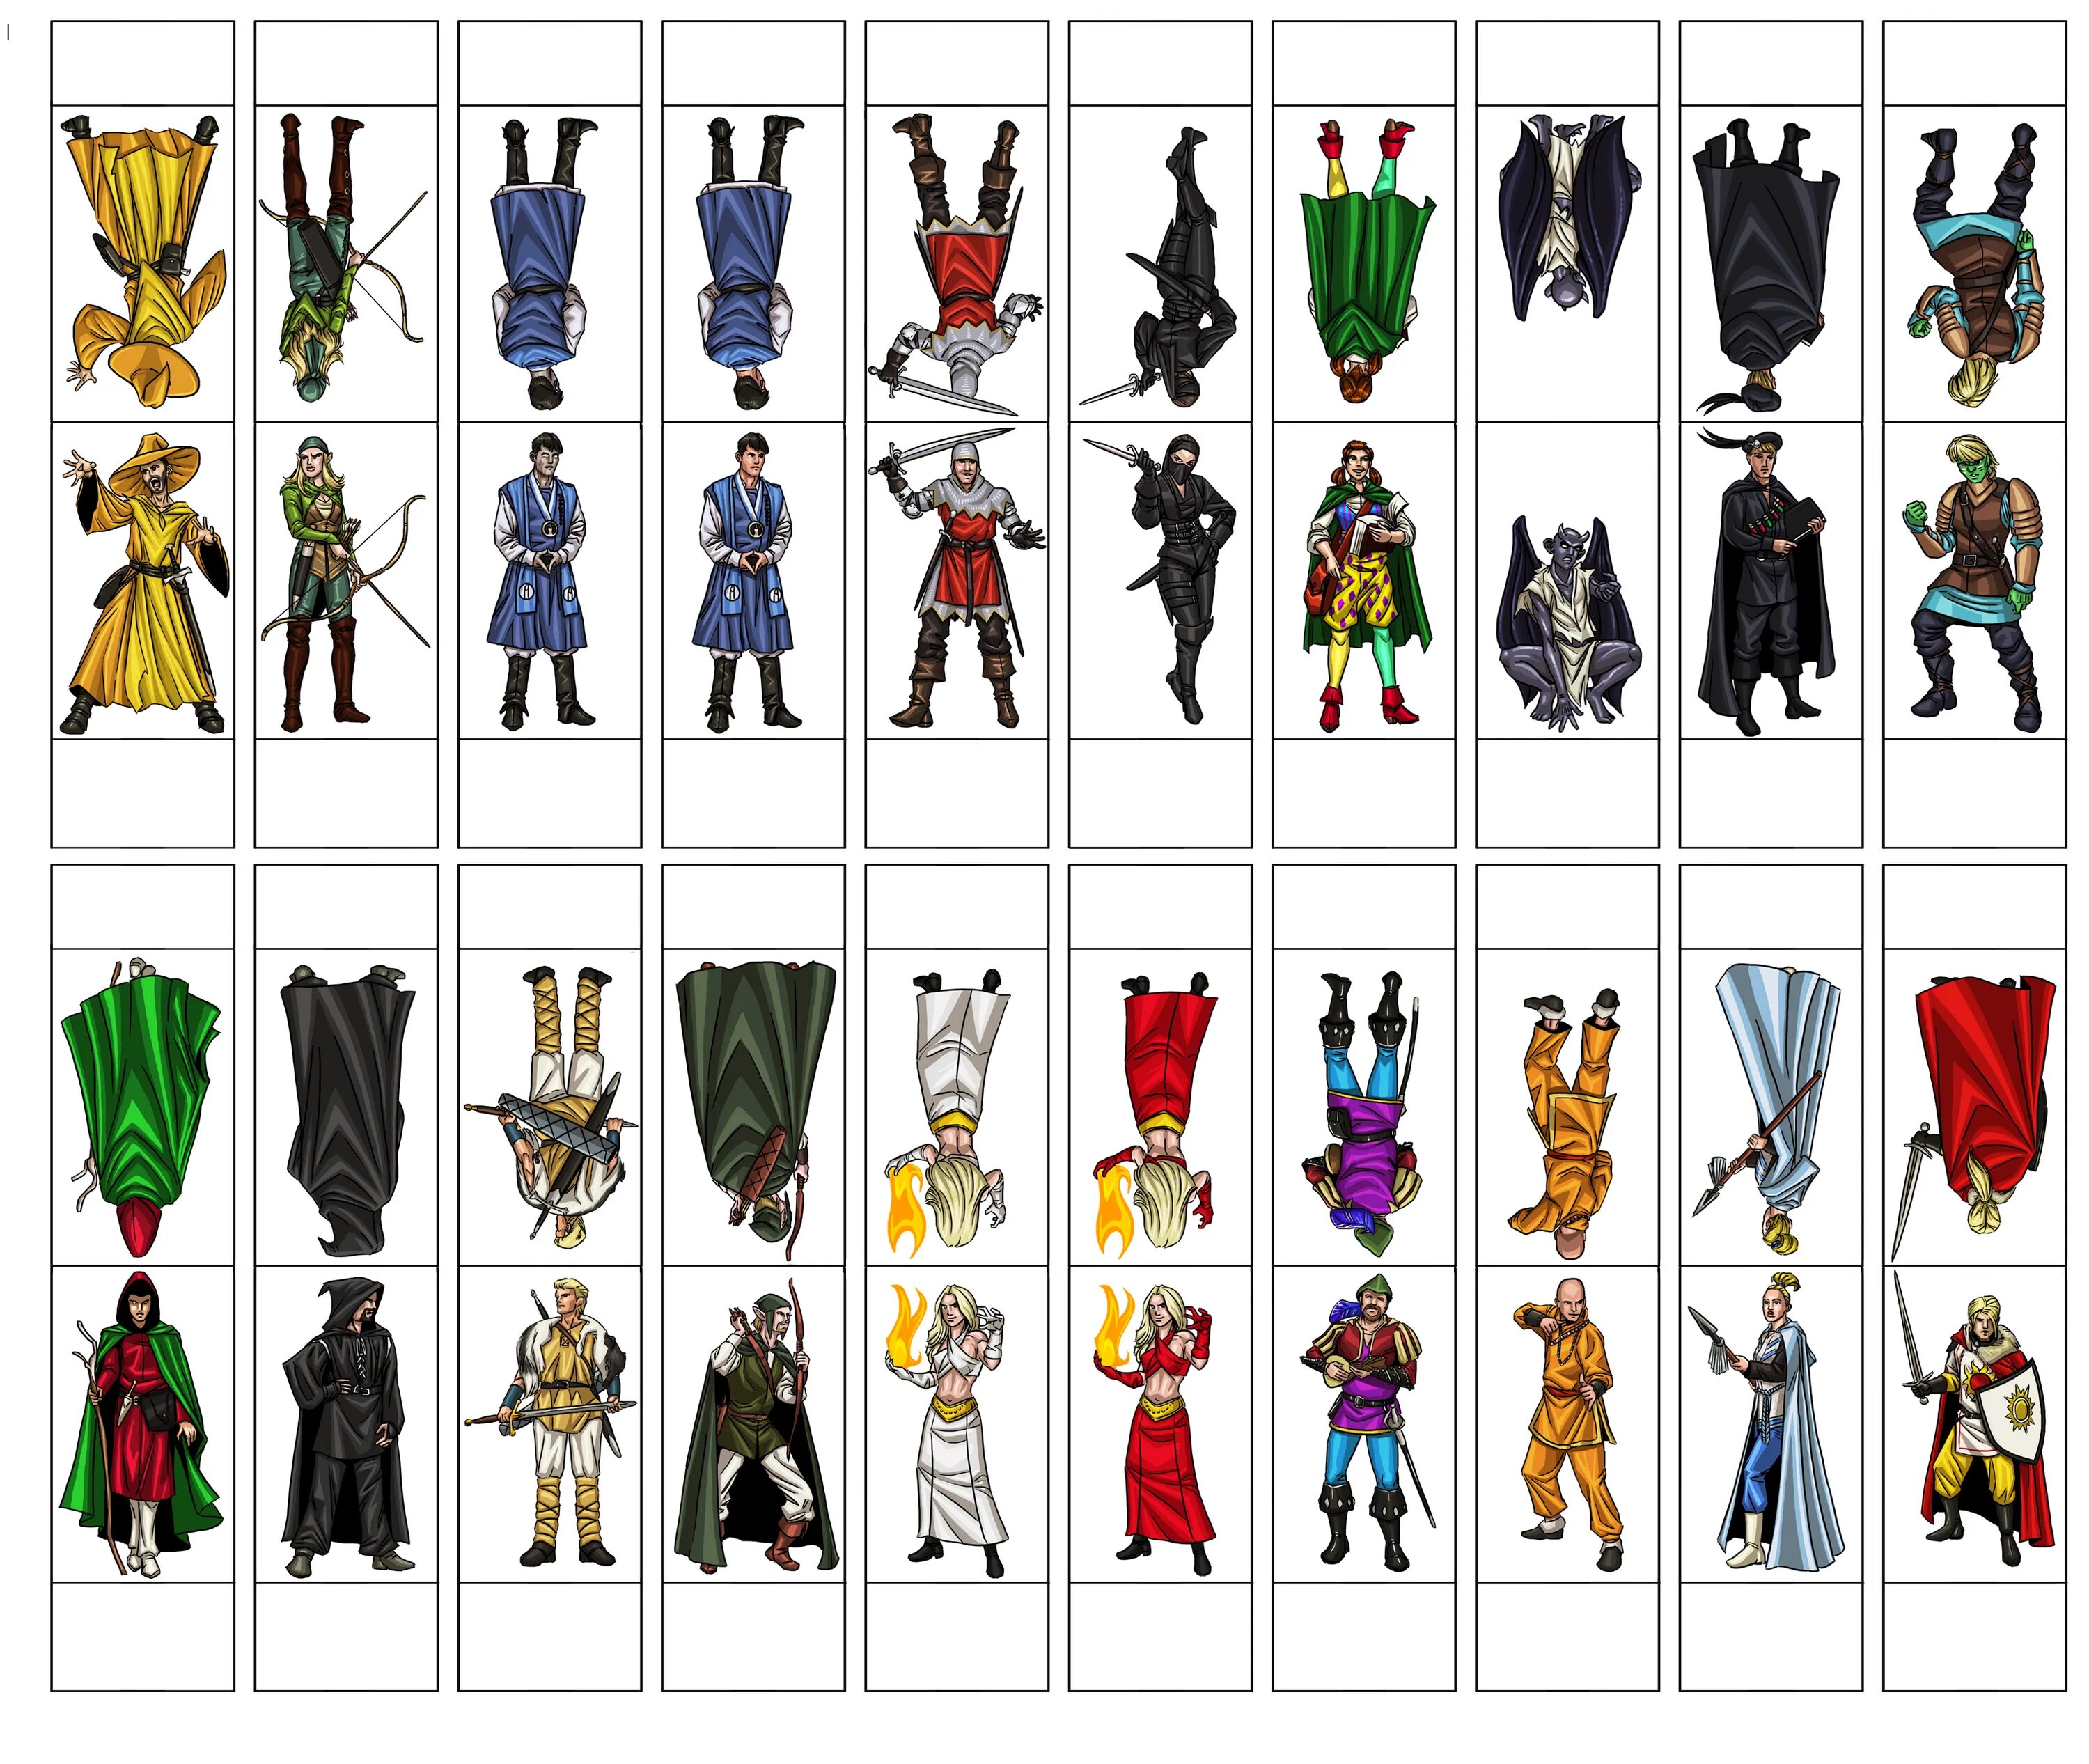 Персонажи ДНД настолка. Бумажные миниатюрки героев в Dungeons & Dragons. Бумажные миниатюры для ДНД герои. Фигурки персонажей ДНД.